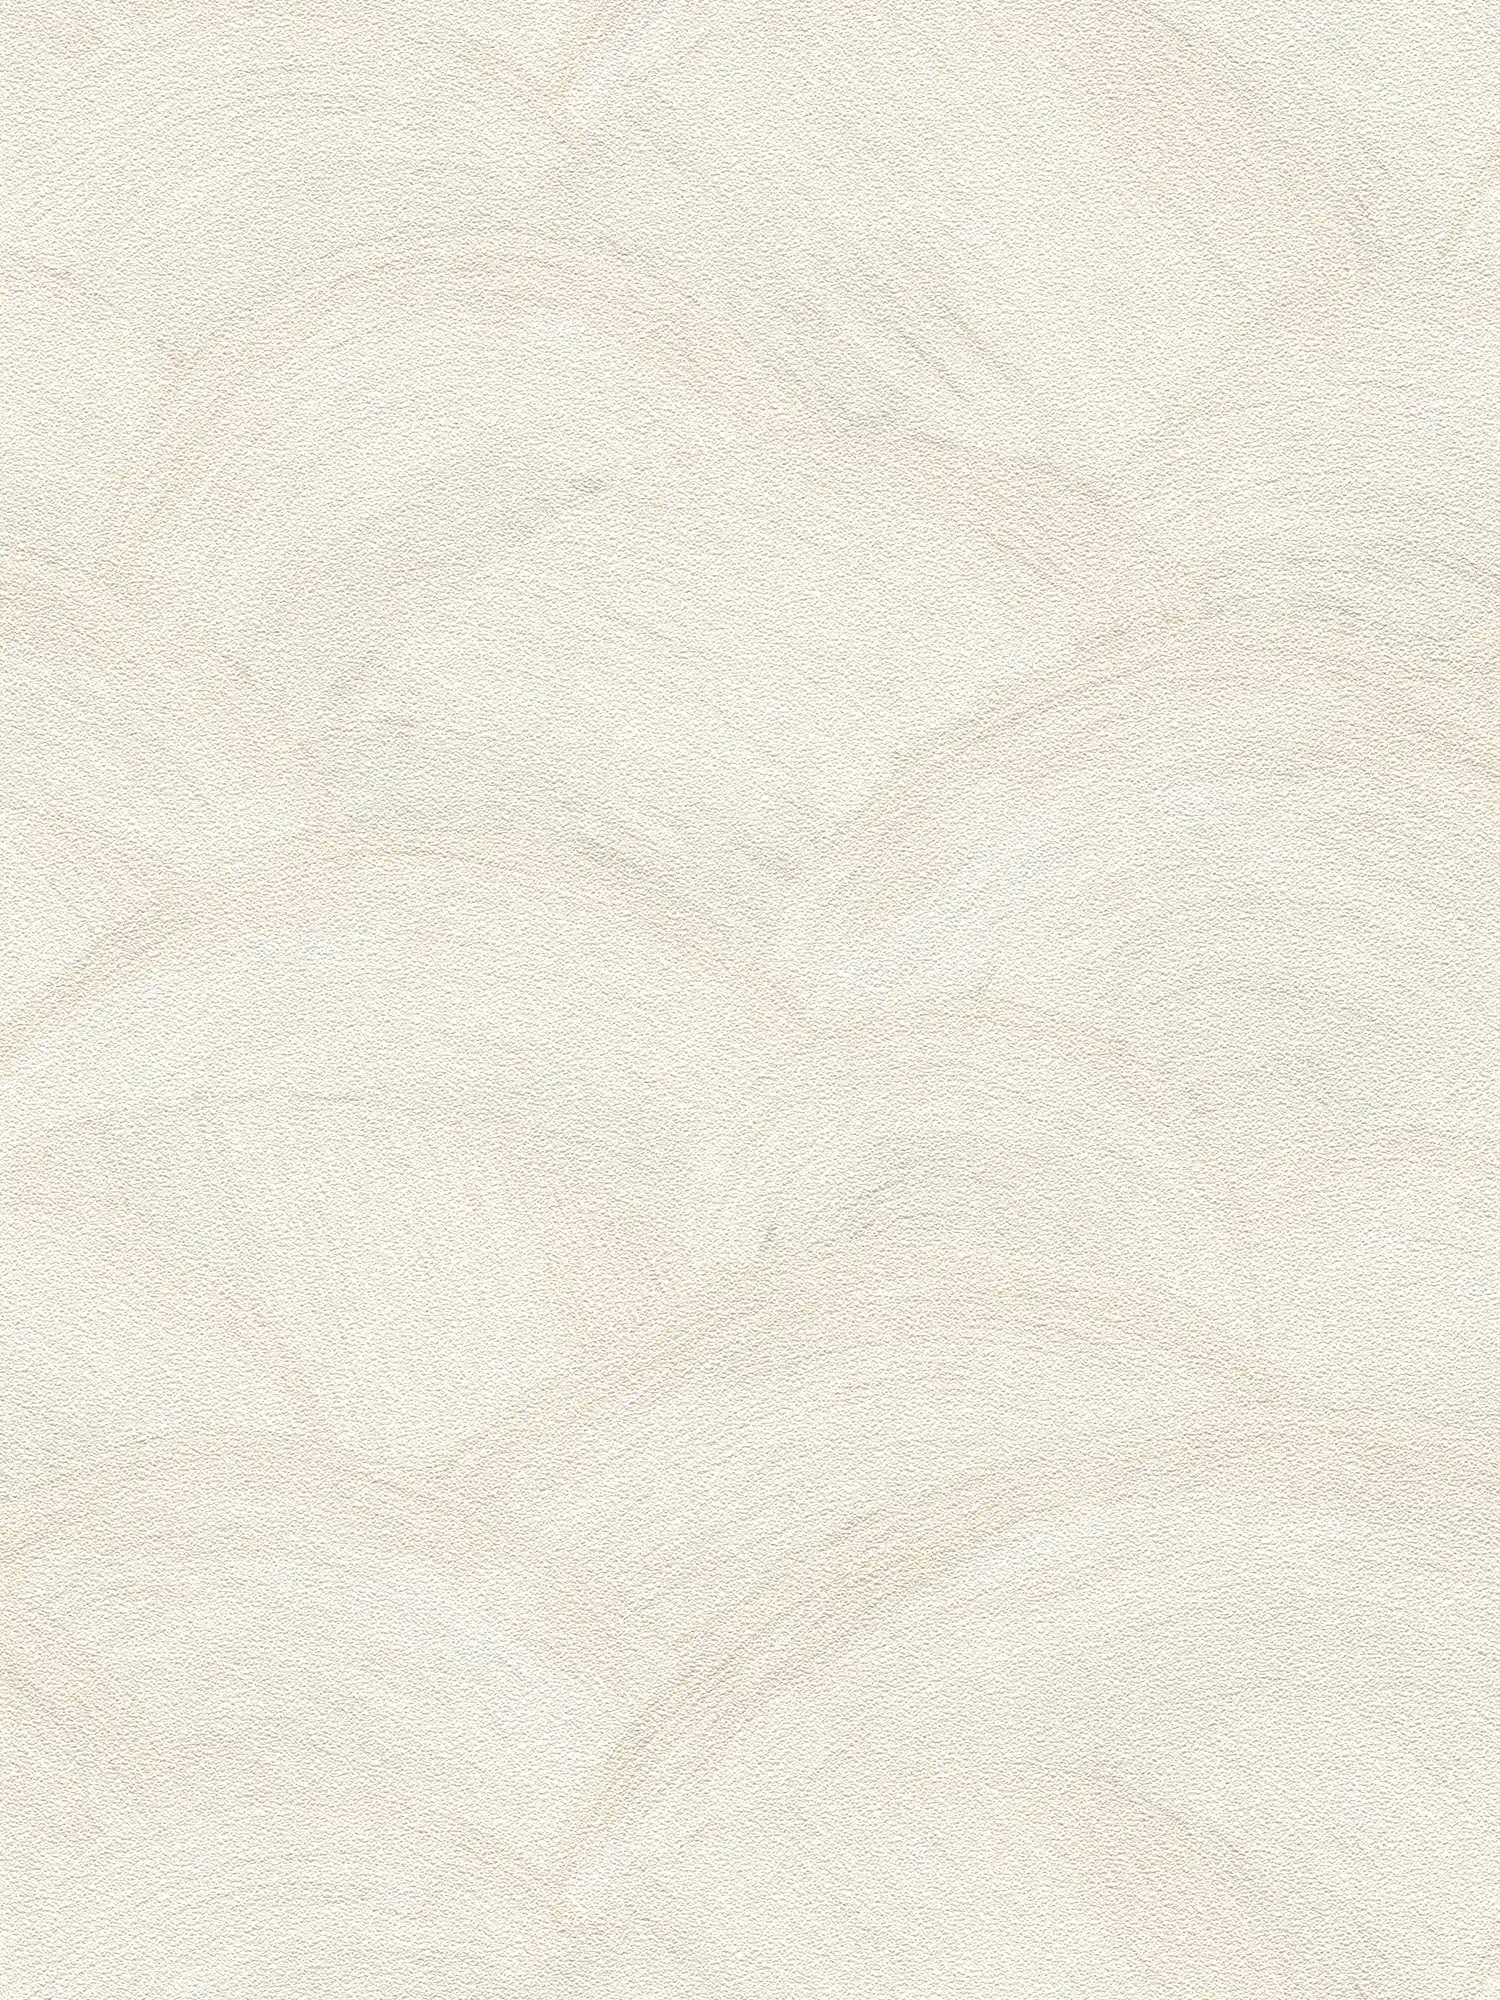 Papier peint intissé avec motif de vagues subtiles - blanc, crème, gris
